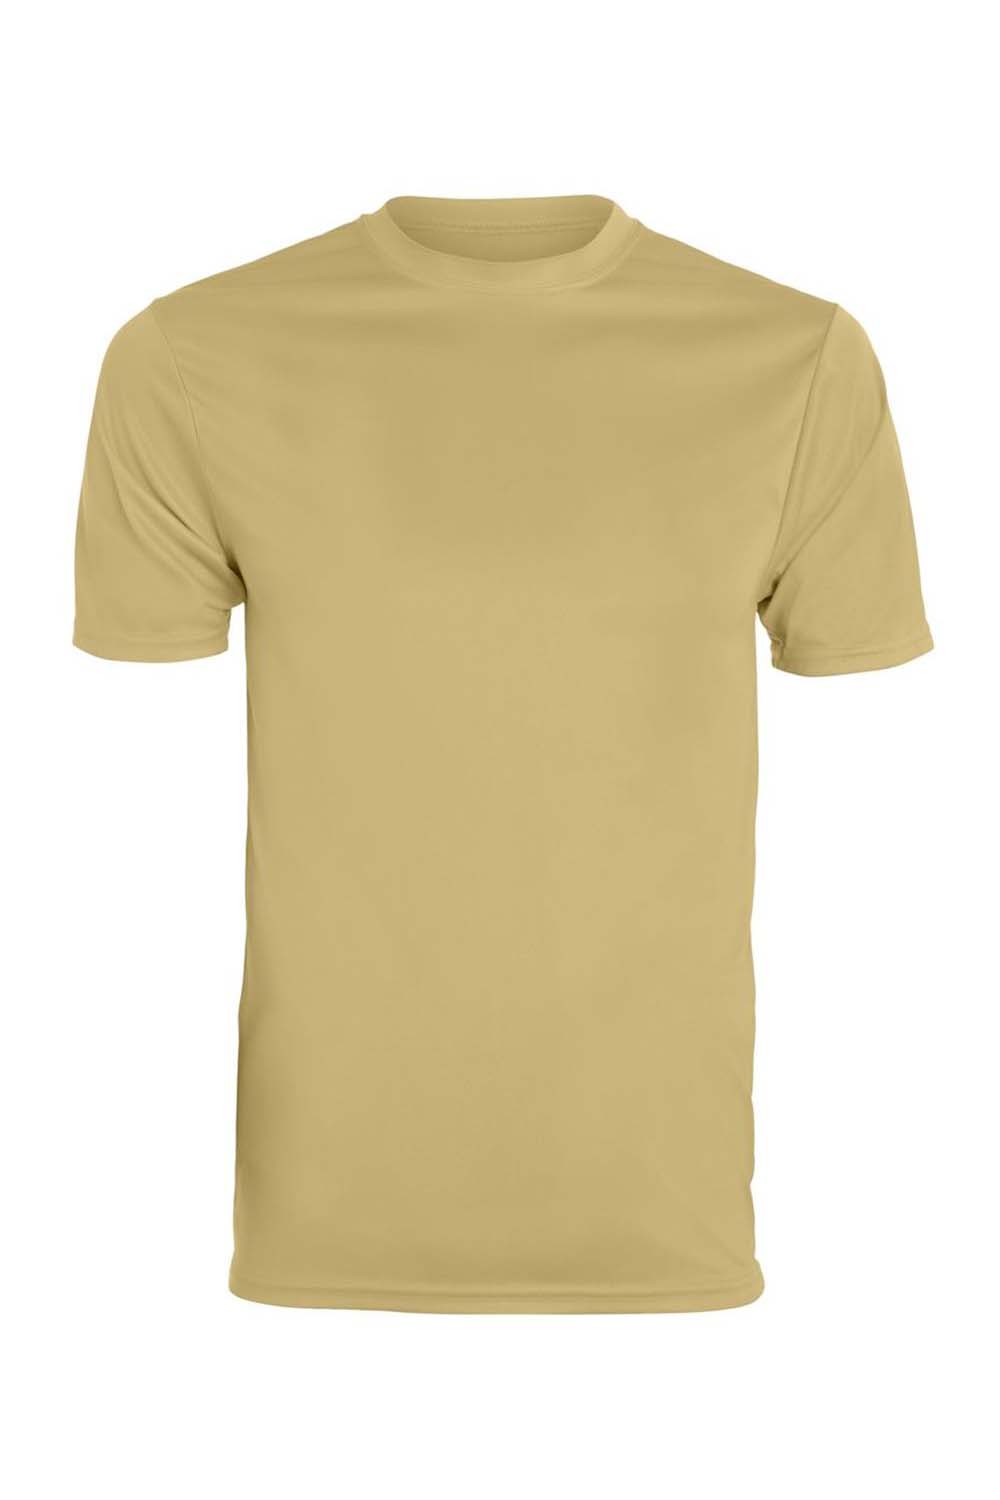 Augusta Sportswear 790 Mens Moisture Wicking Short Sleeve Crewneck T-Shirt Vegas Gold Model Flat Front